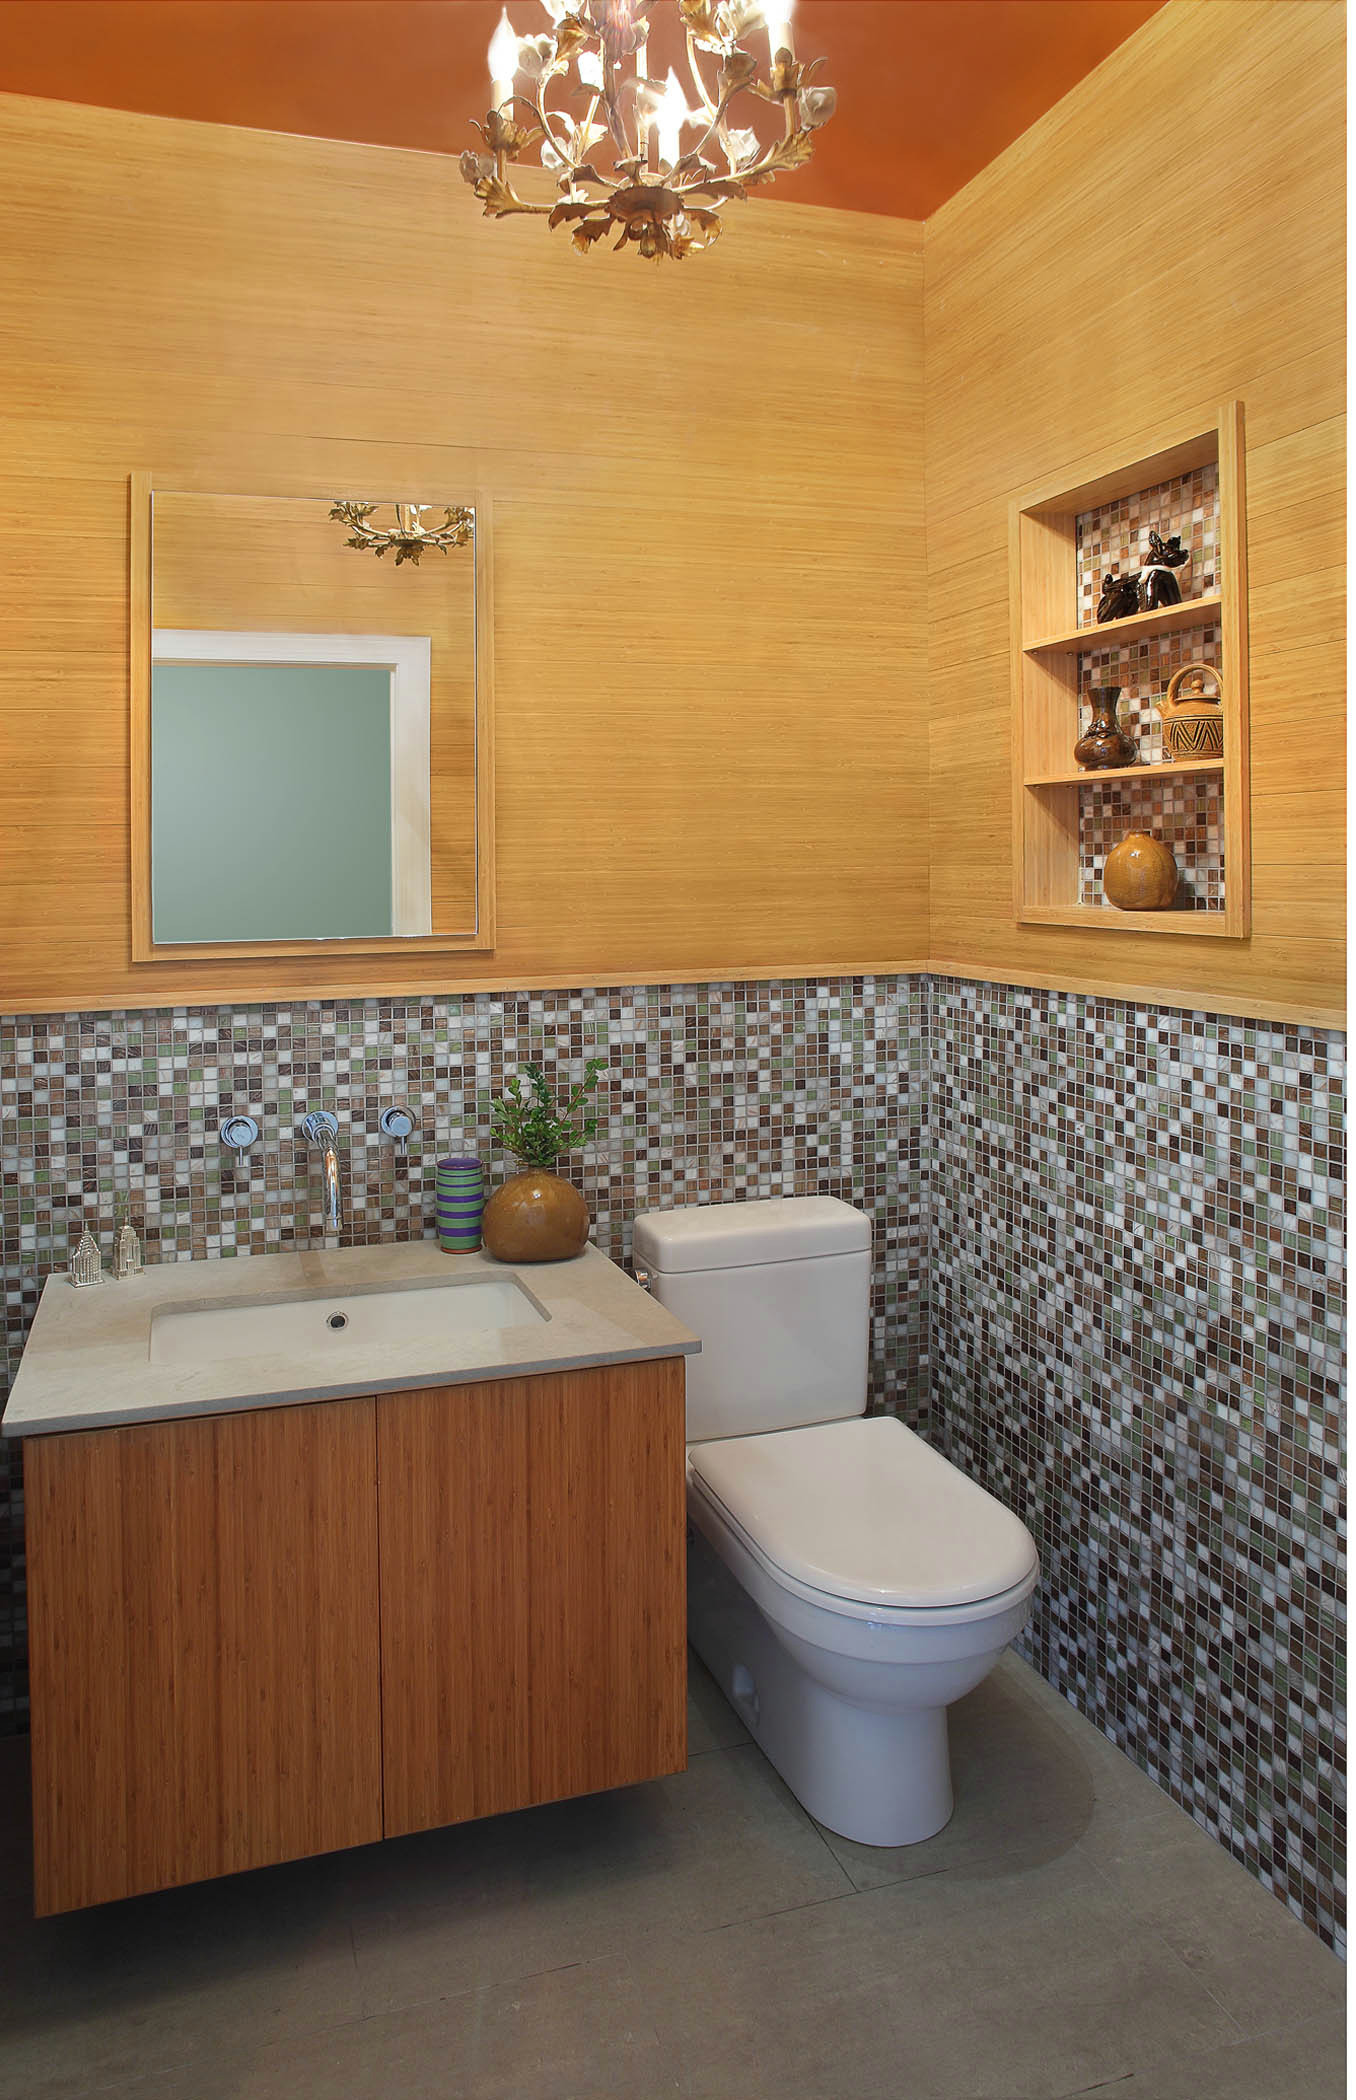 Элегантно и красиво: мозаика в дизайне ванной комнаты (66 фото)